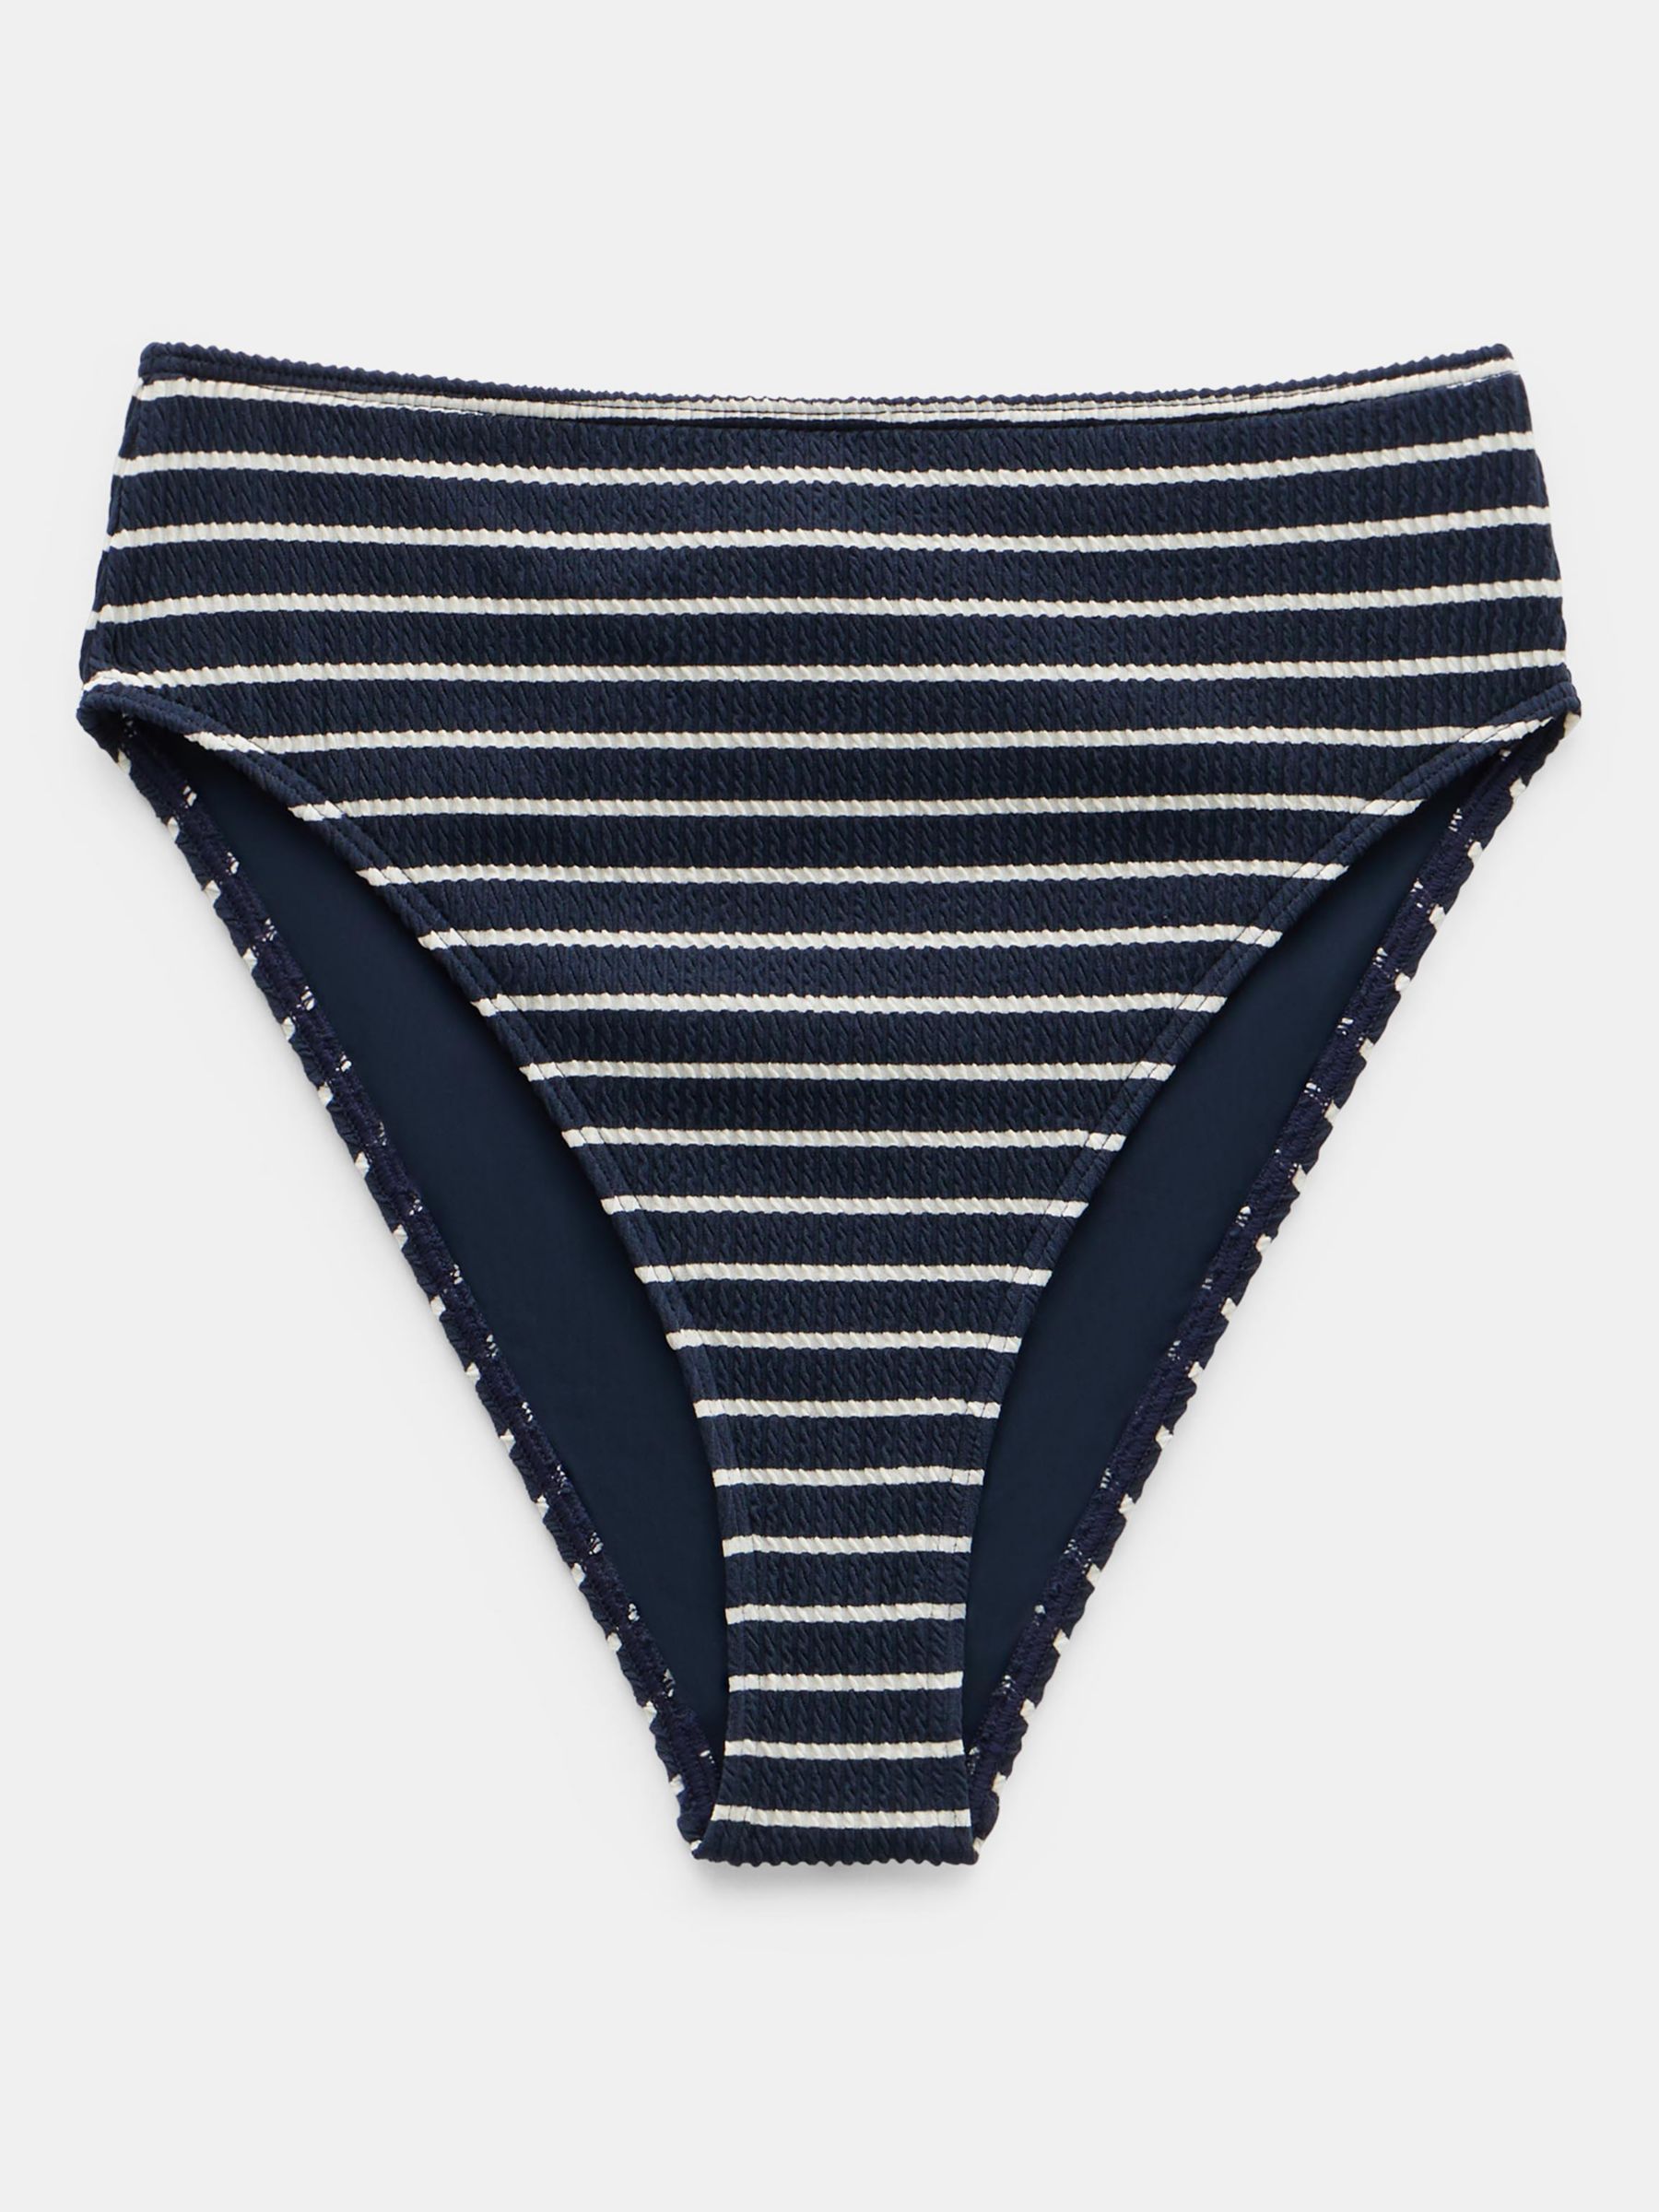 HUSH Harper High Waist Stripe Bikini Bottoms, Navy/White, 16